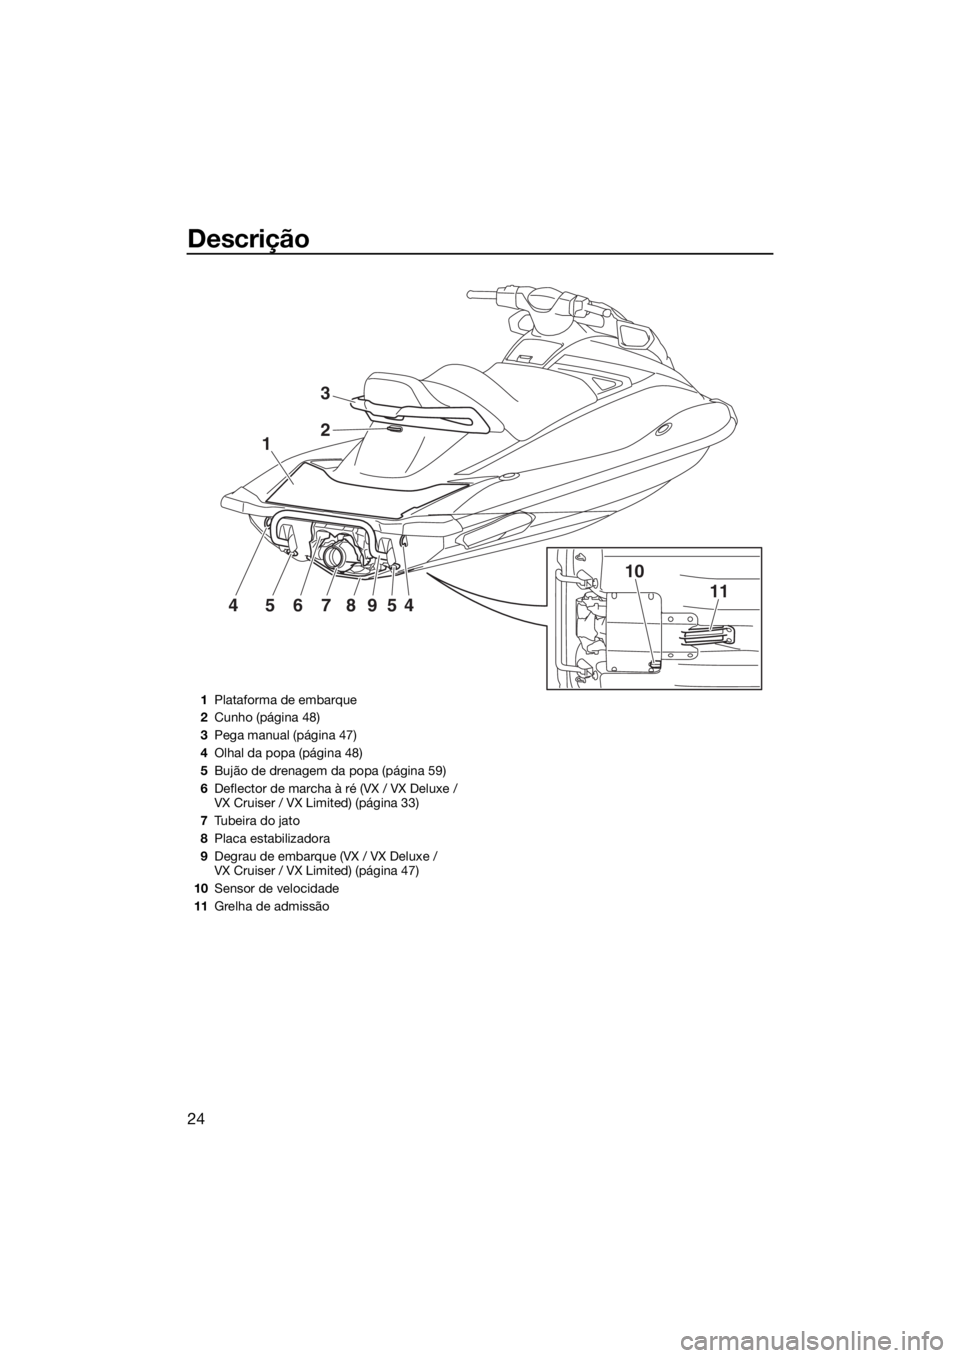 YAMAHA VX 2020  Manual de utilização (in Portuguese) Descrição
24
1
10
1145678954
2
3
1Plataforma de embarque
2Cunho (página 48)
3Pega manual (página 47)
4Olhal da popa (página 48)
5Bujão de drenagem da popa (página 59)
6Deflector de marcha à r�